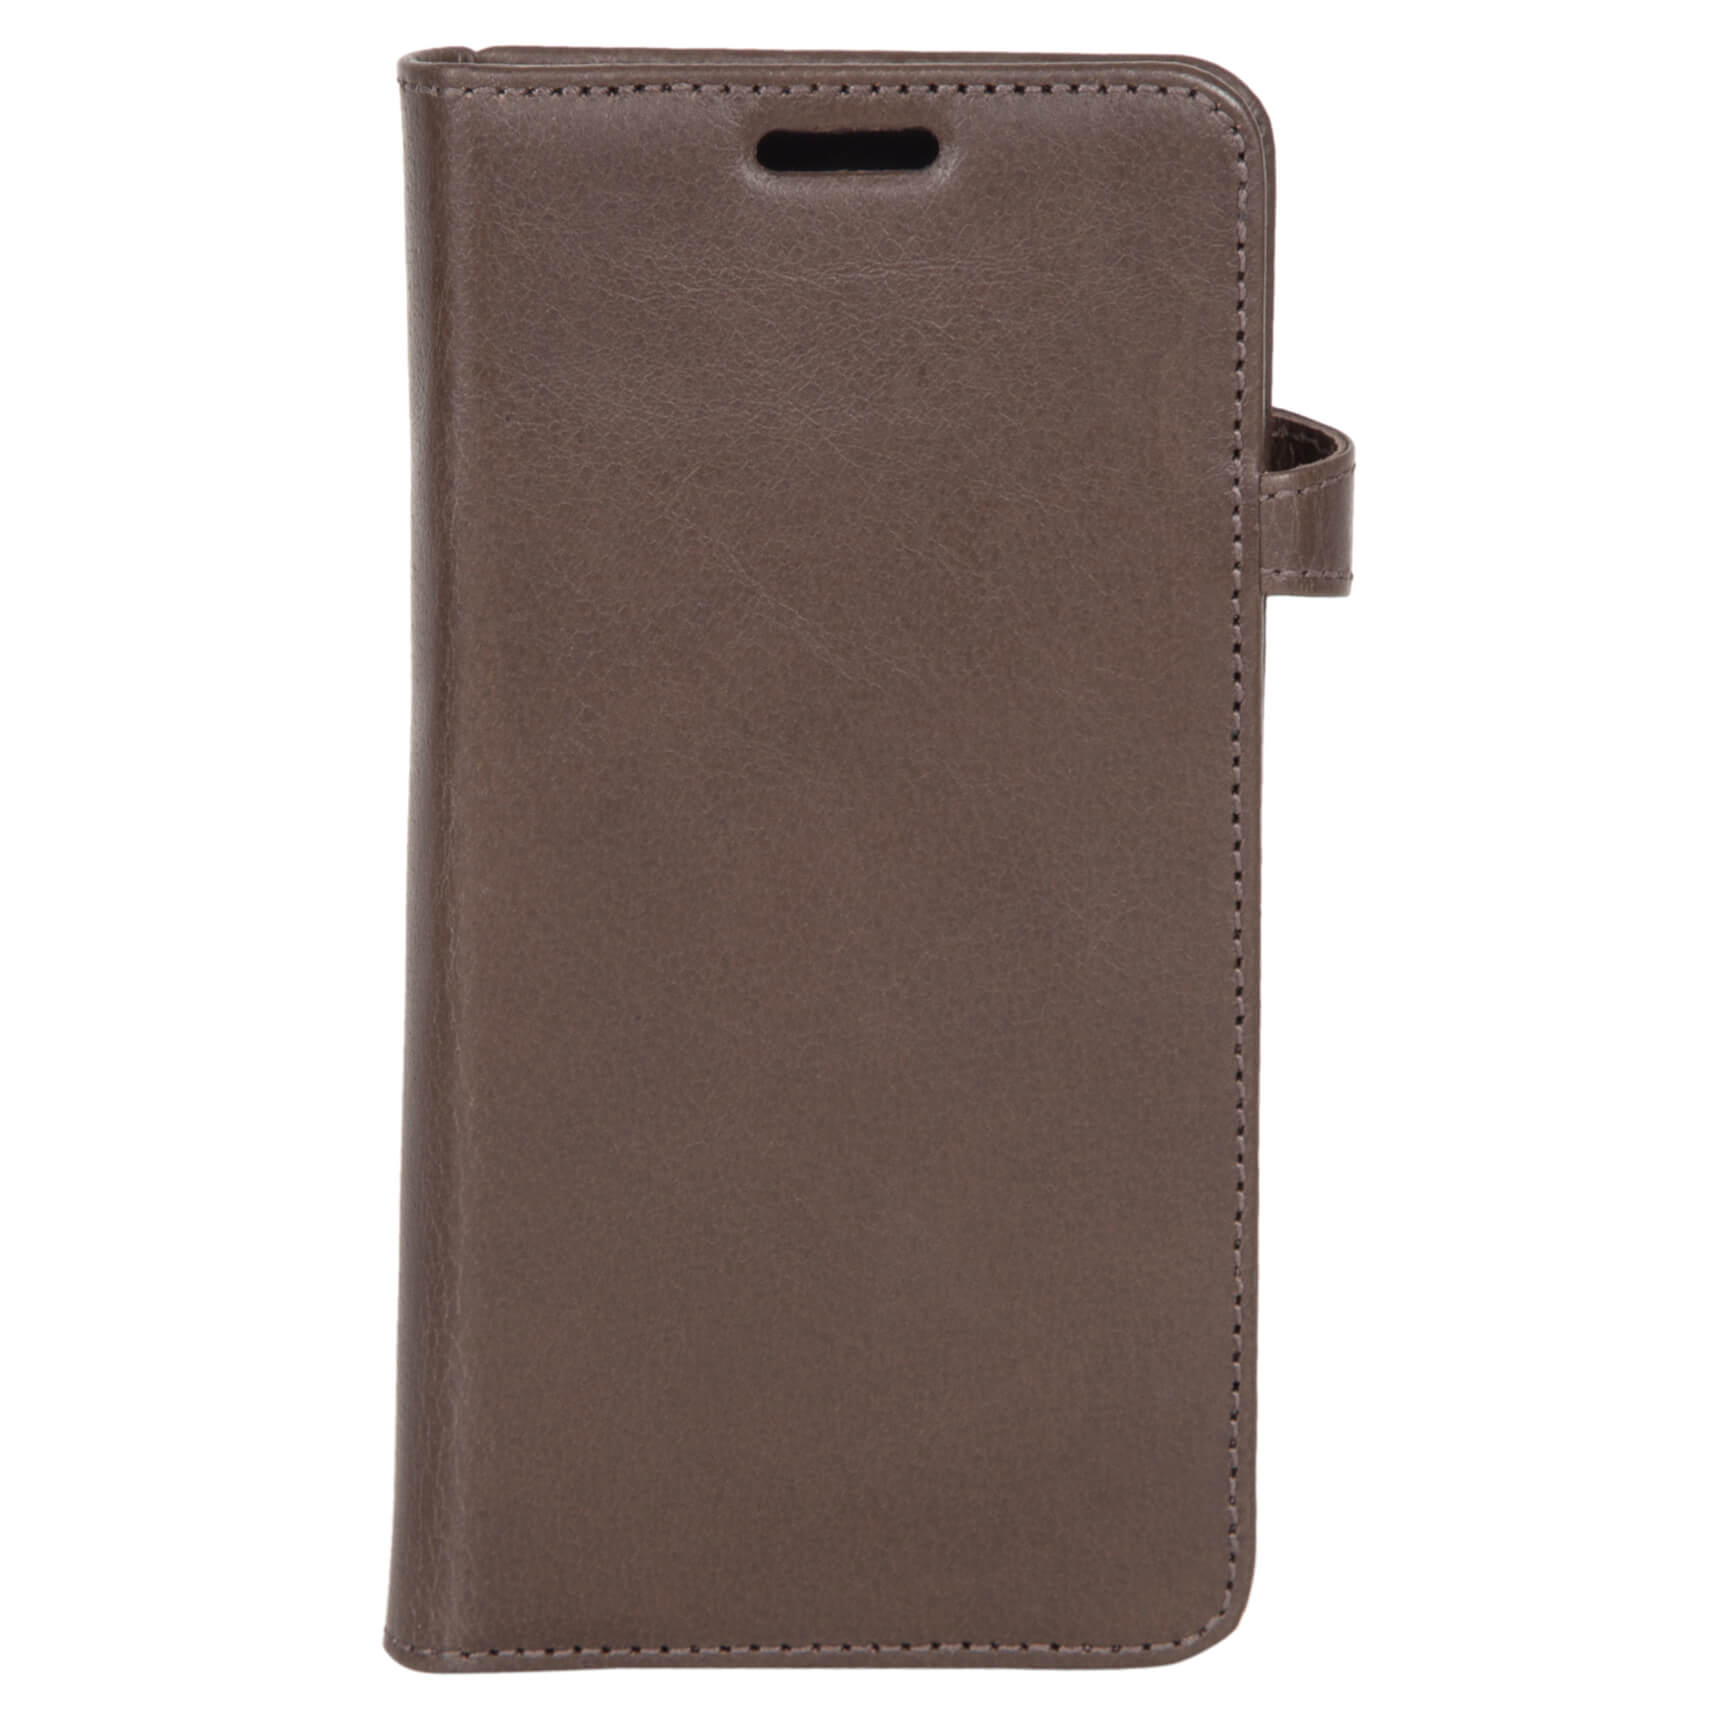 Wallet Case Brown - Samsung S7 